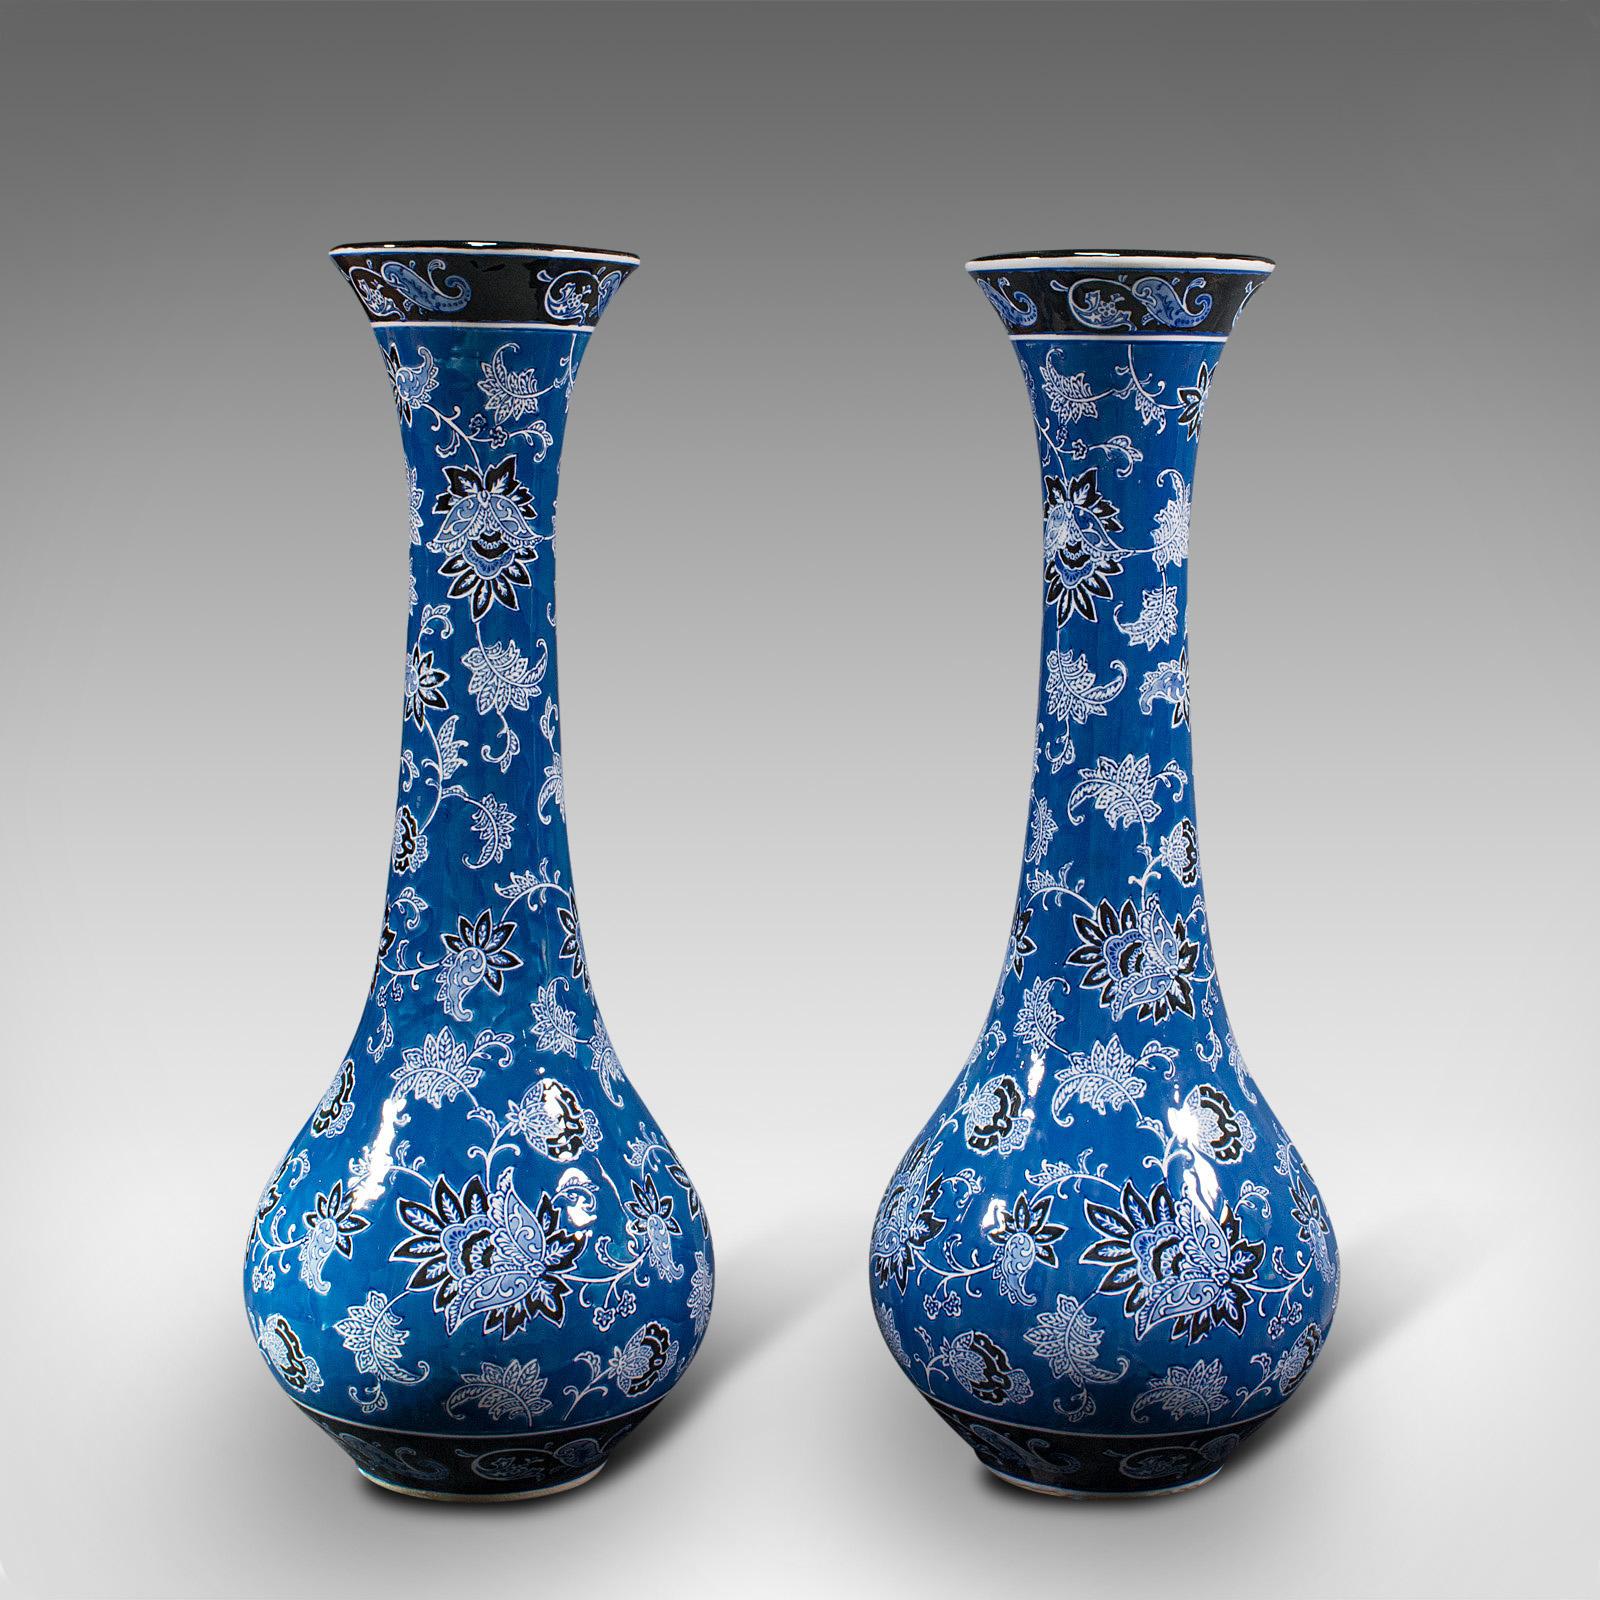 Il s'agit d'une paire de grands vases décoratifs vintage en forme de lys. Un balustre fleuri français en céramique, datant de la fin du 20e siècle, vers 1980.

Profil sinueux, haut et d'un poids rassurant
Présentant une patine d'usage désirable